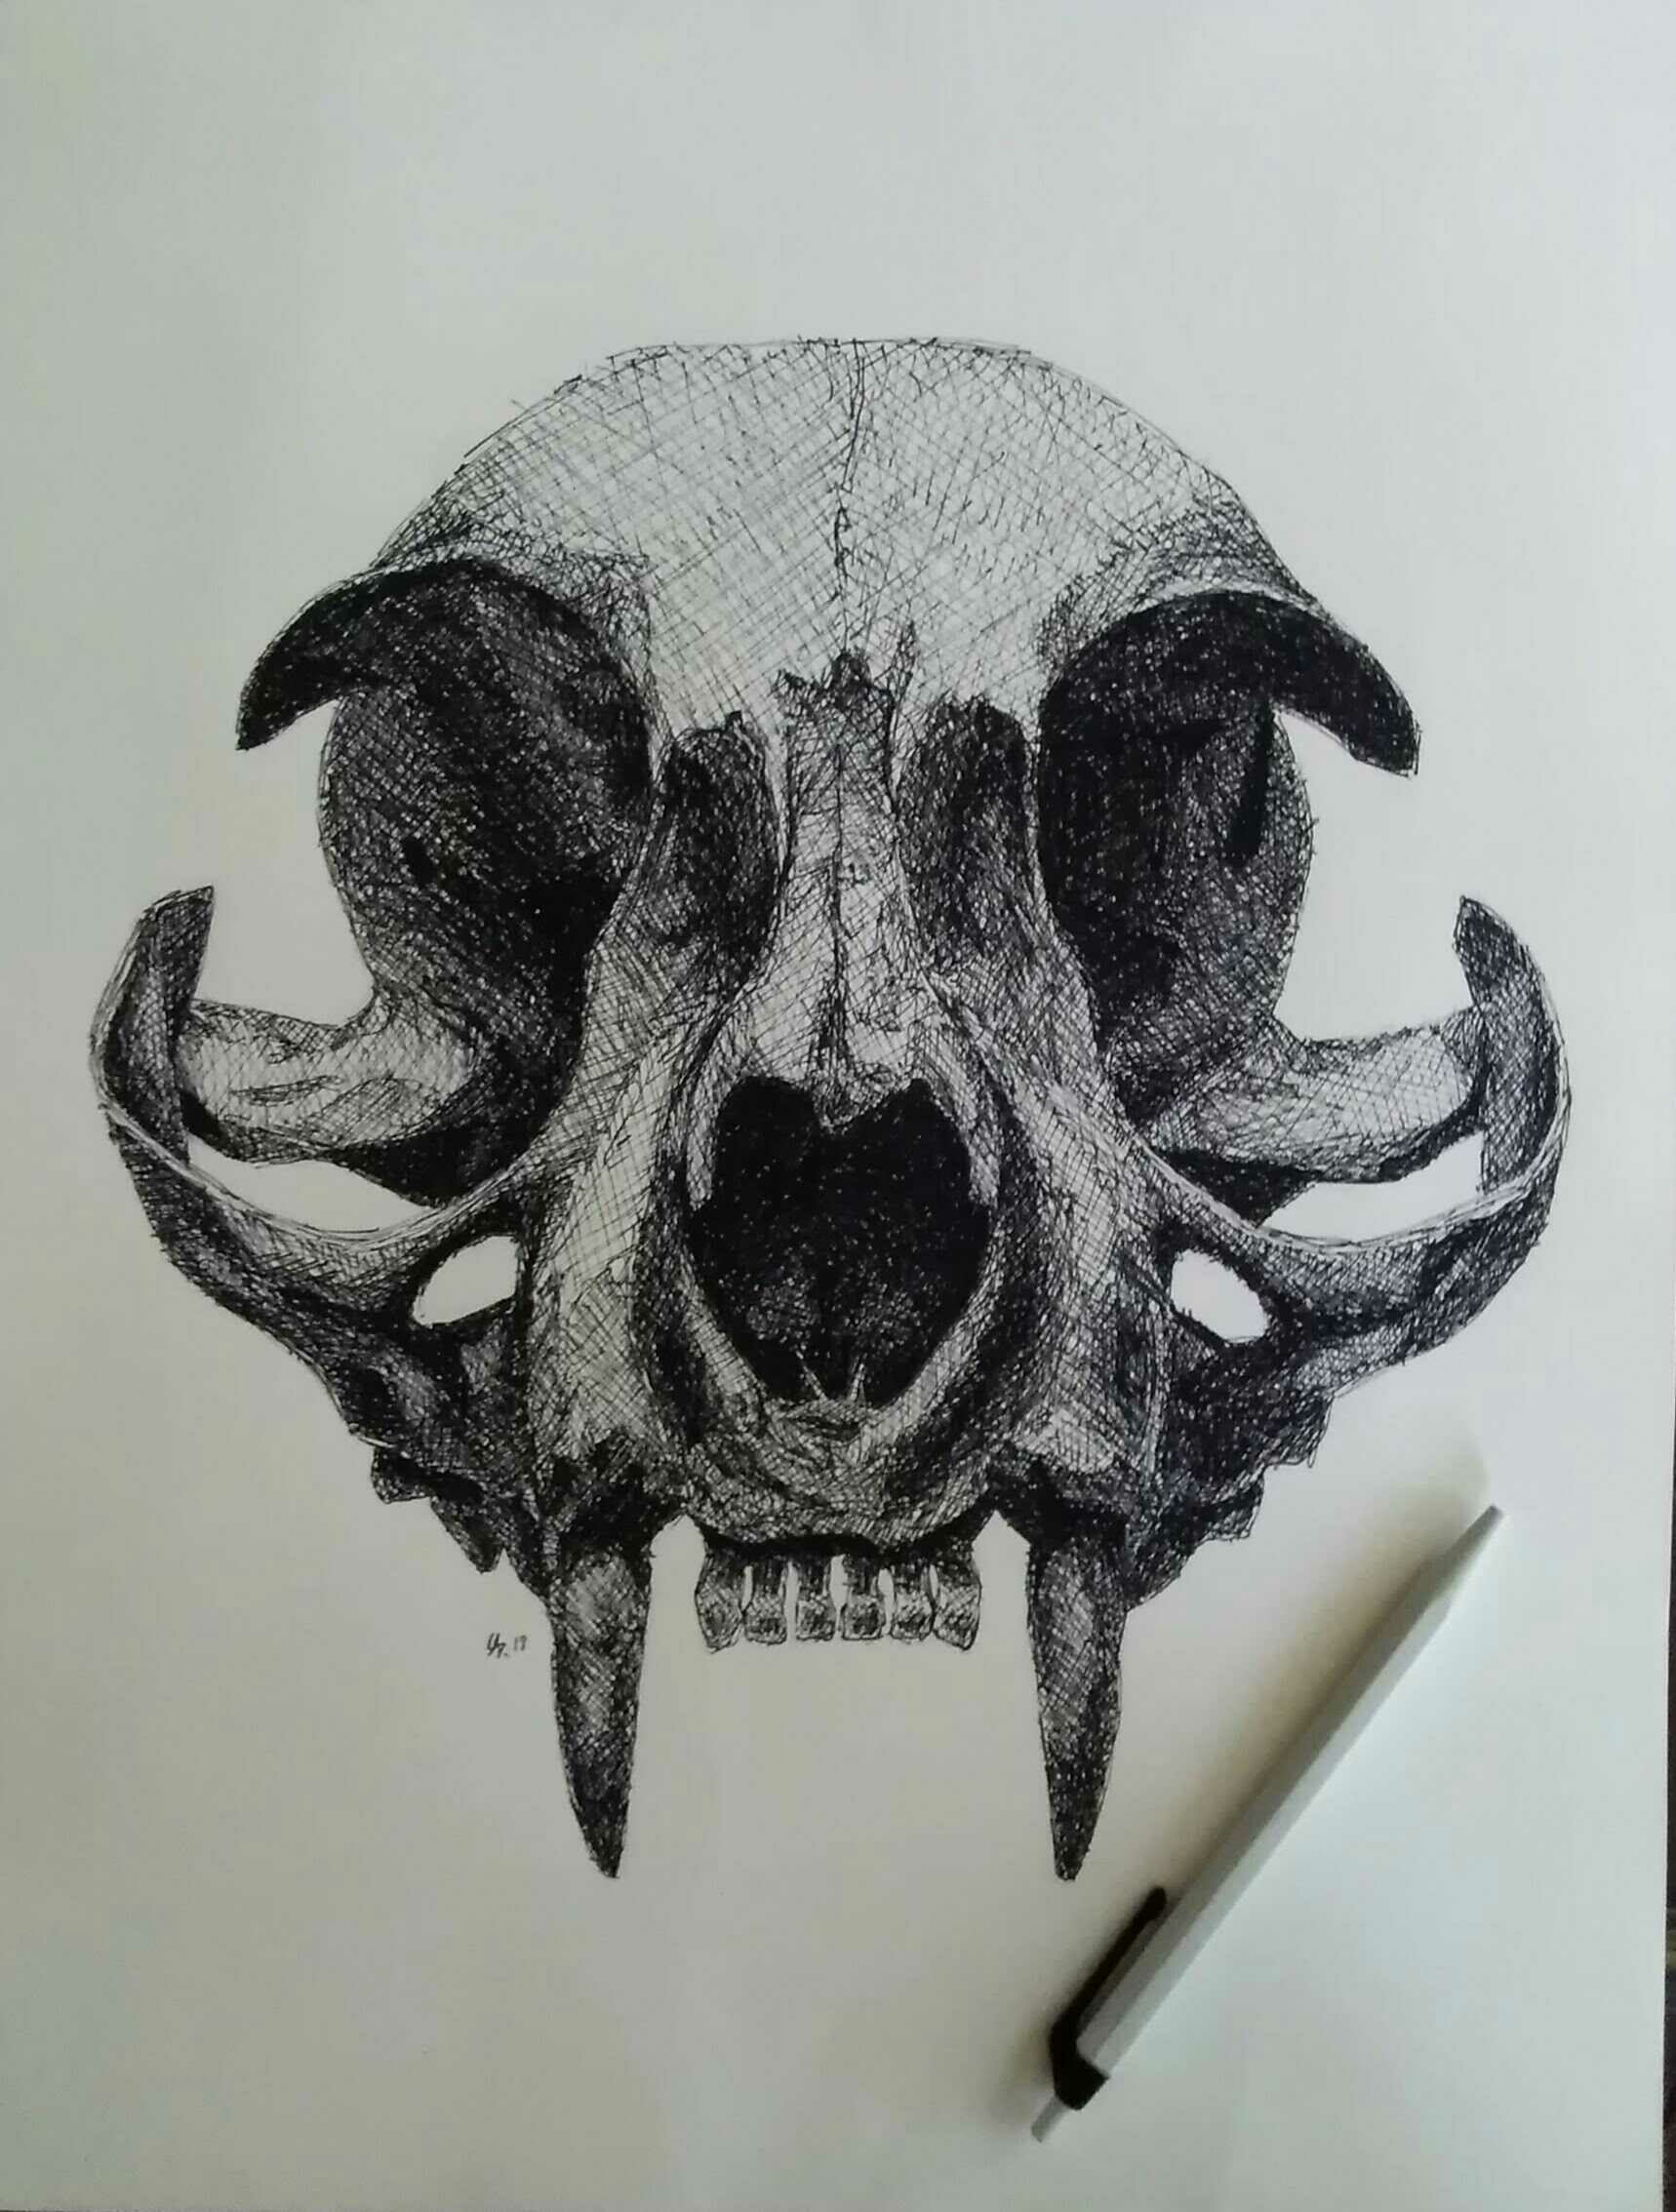 Cat Skull Digital Drawing by usmelllikedogbuns on DeviantArt